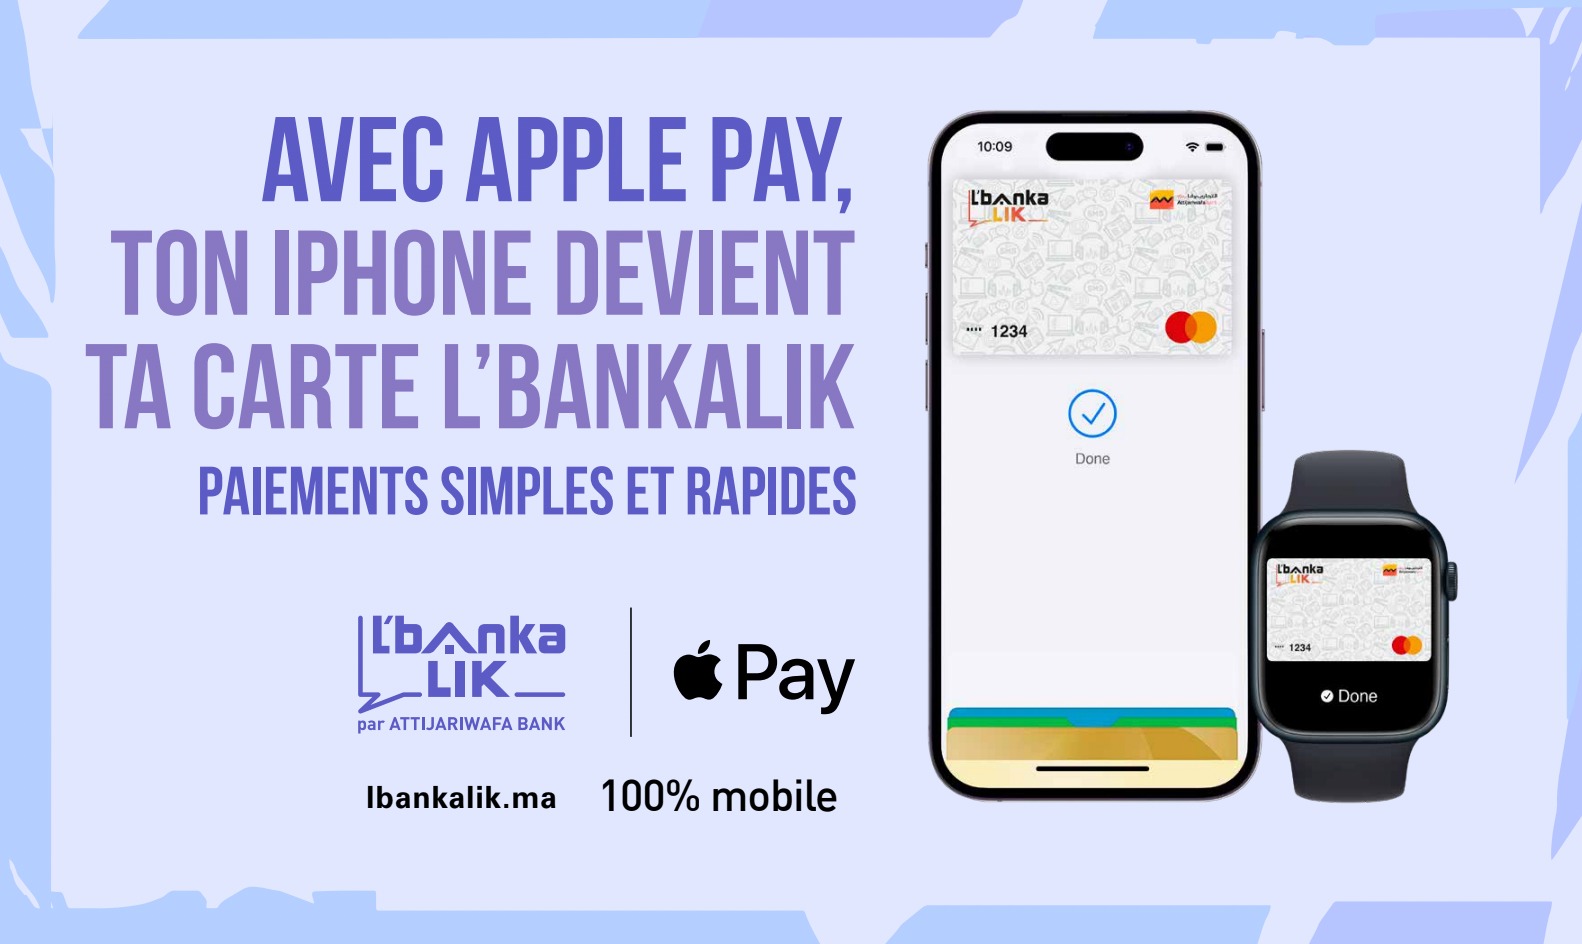 Paiement sur mobile : Attijariwafa bank lance Apple Pay pour ses clients L'bankalik